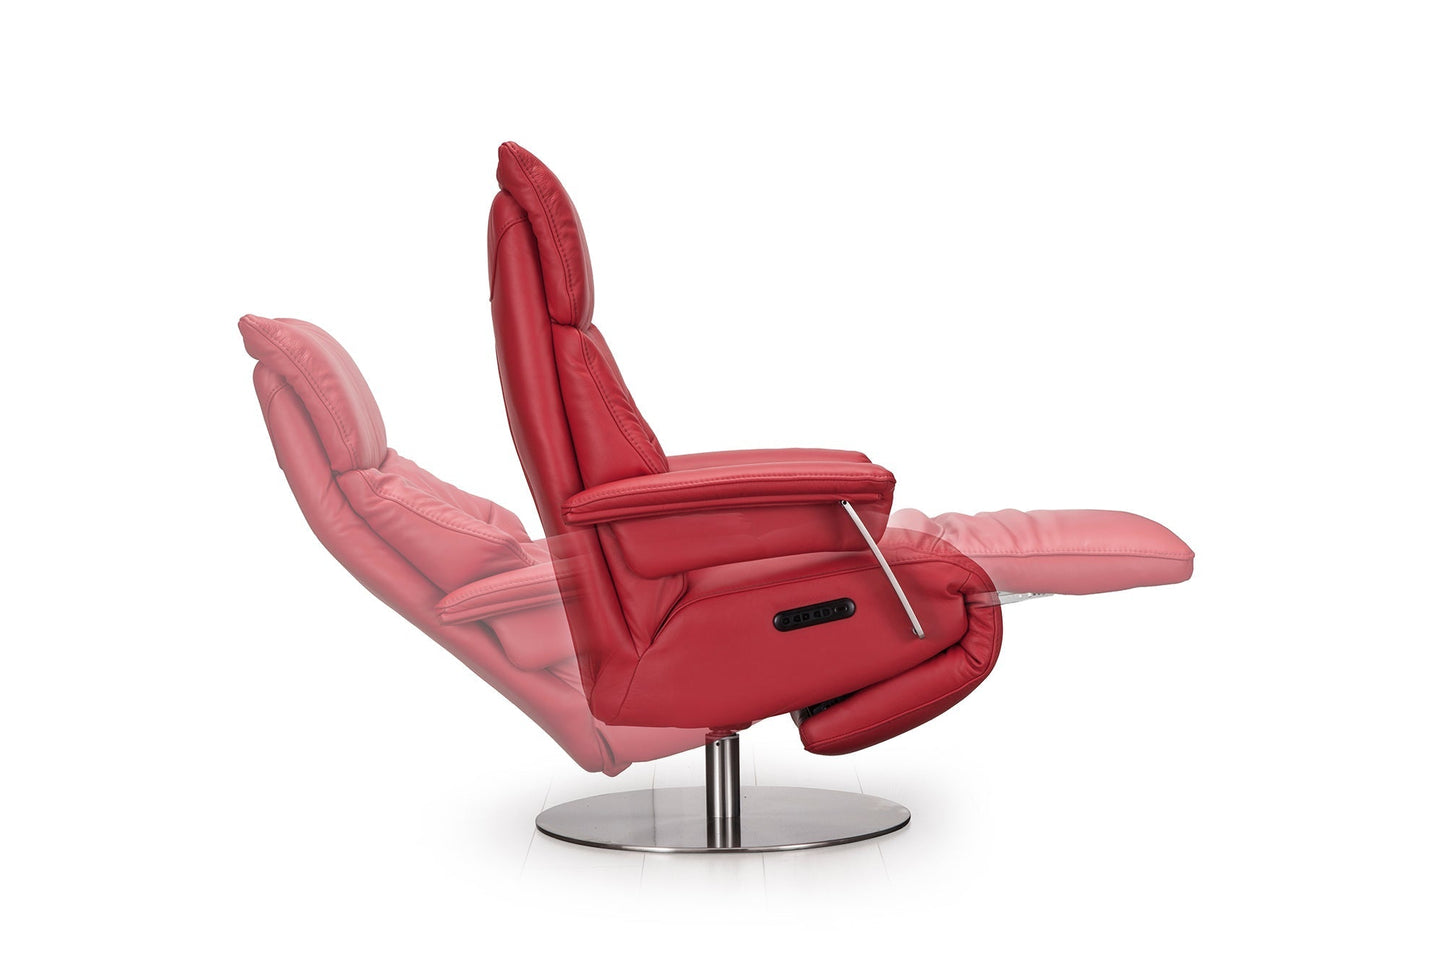 Leder Premium-Relaxsessel "MRS 1020" in modernem Design -  von meinRelaxsessel.de - 5 Jahre Grantie auf Relaxsessel GESCHENKT  Nur 1199 €! Kaufe jetzt bei meinRelaxsessel.de